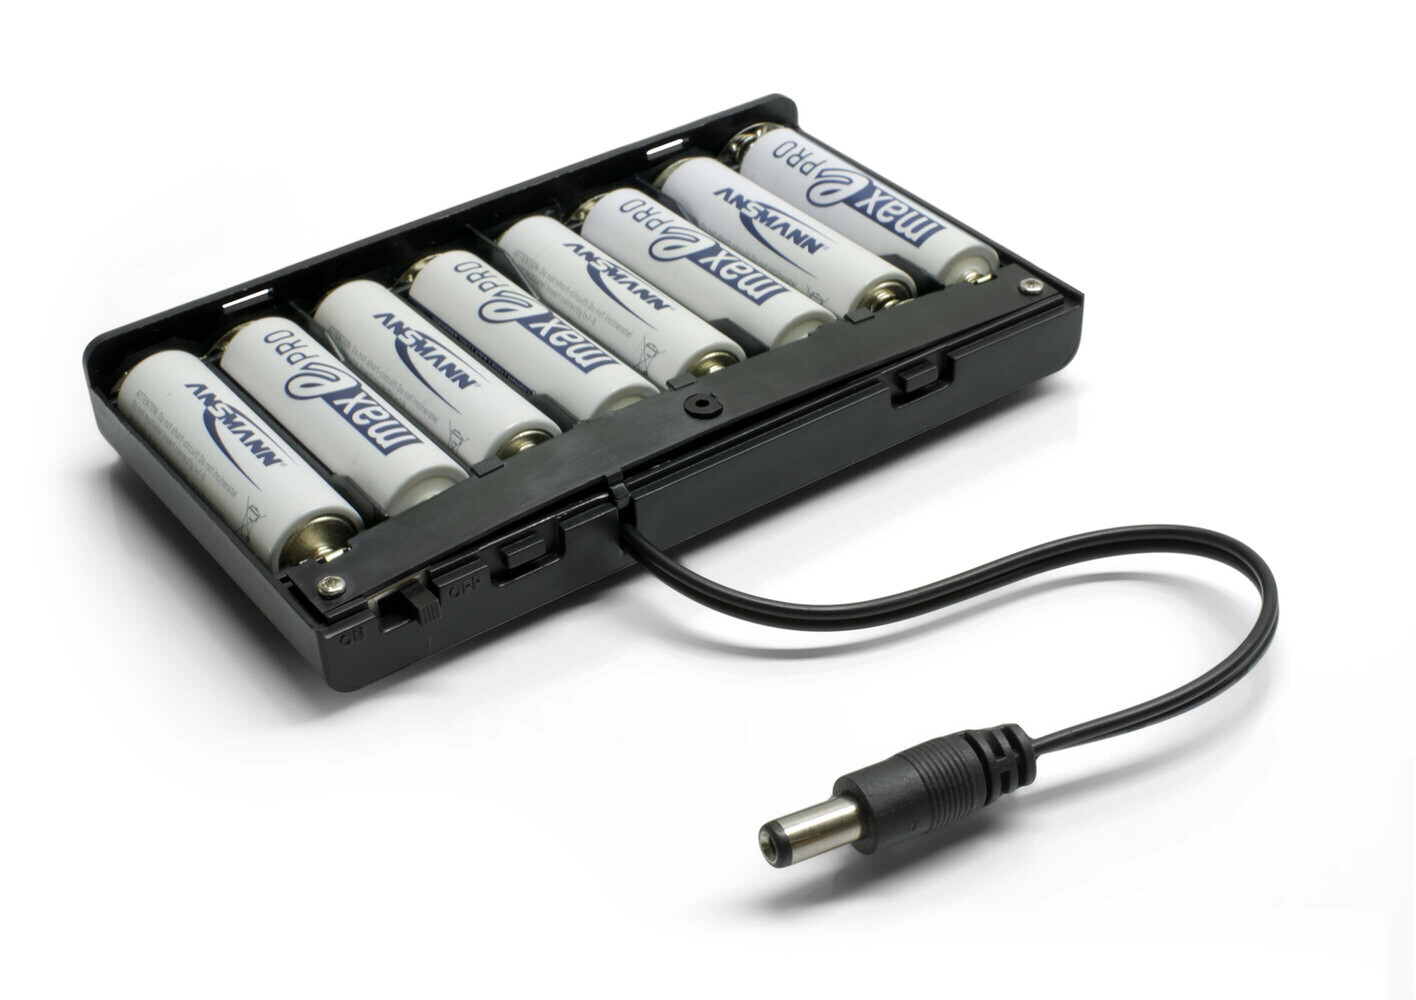 LED Universum - Batteriebox für mobile LED Anwendungen - tragbar, benutzerfreundlich, kompakt